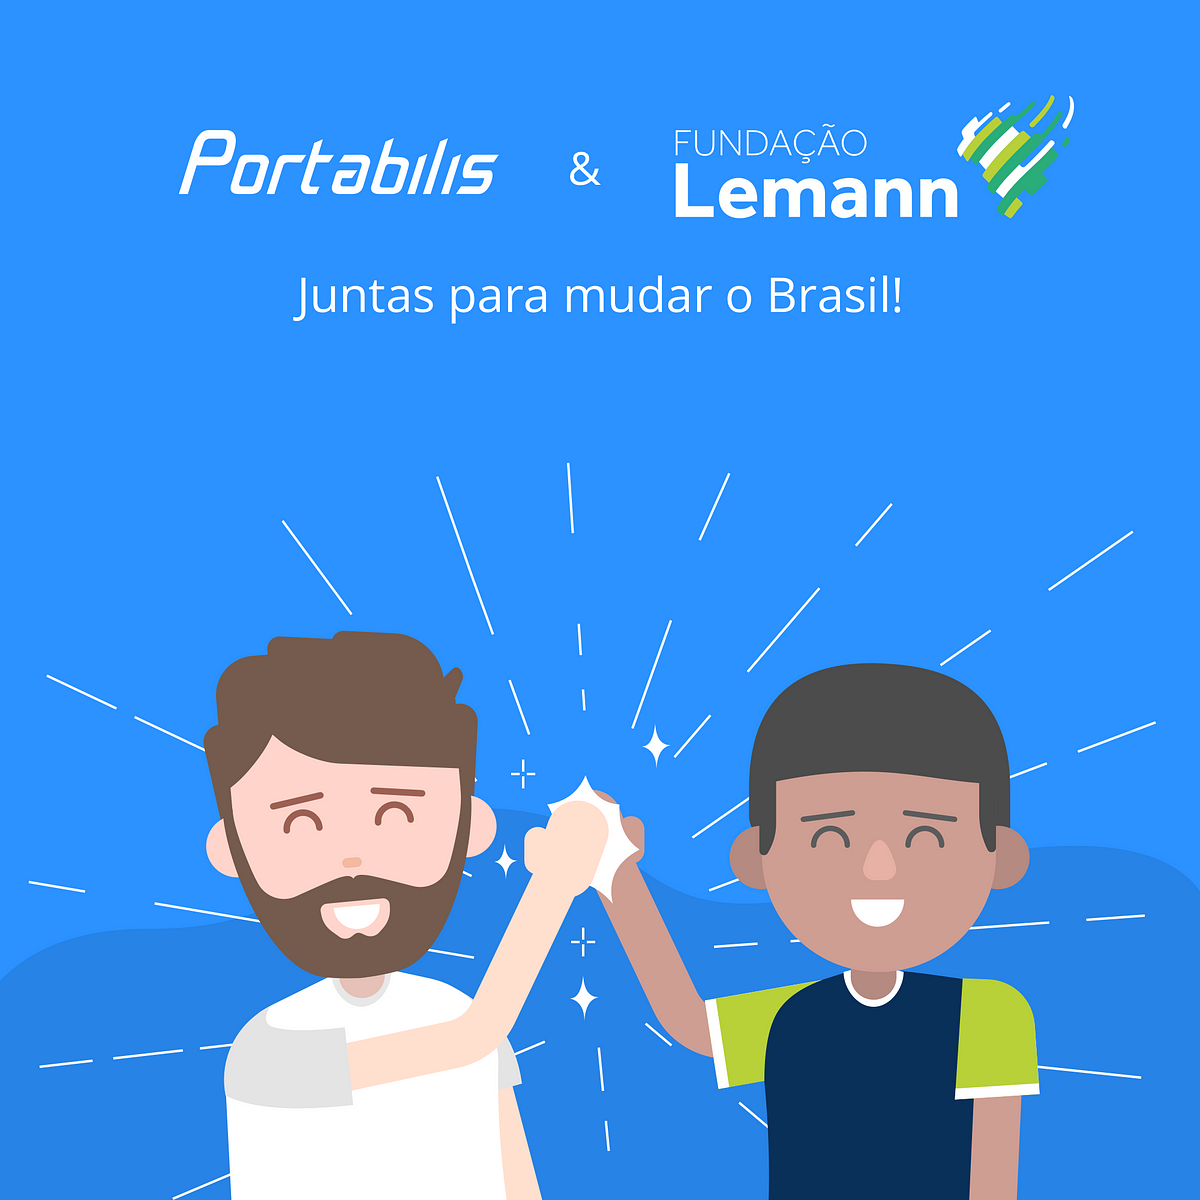 Portabilis e Fundação Lemann: juntas para MUDAR O BRASIL!